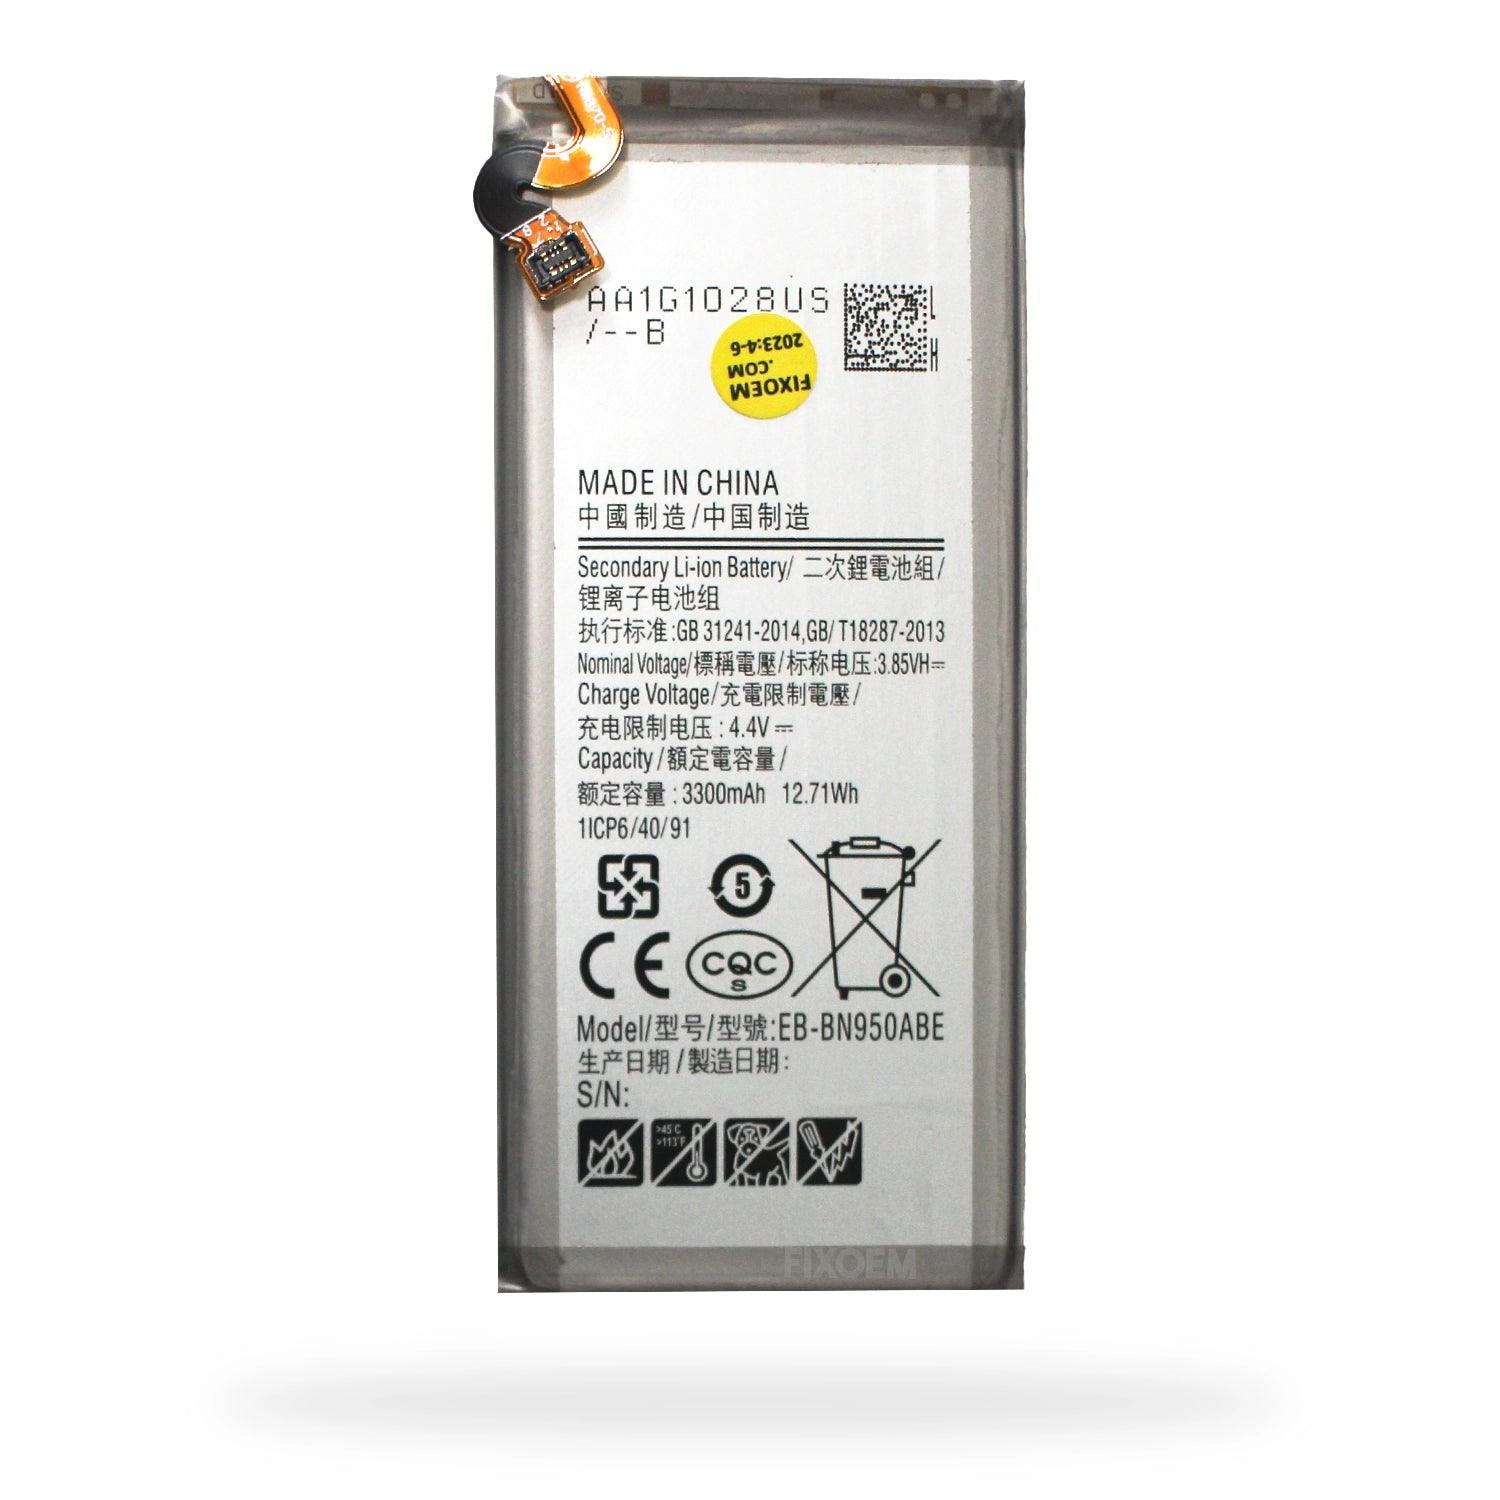 Bateria Samsung Note 8 N950Fd N950F Eb-bn950abe a solo $ 120.00 Refaccion y puestos celulares, refurbish y microelectronica.- FixOEM